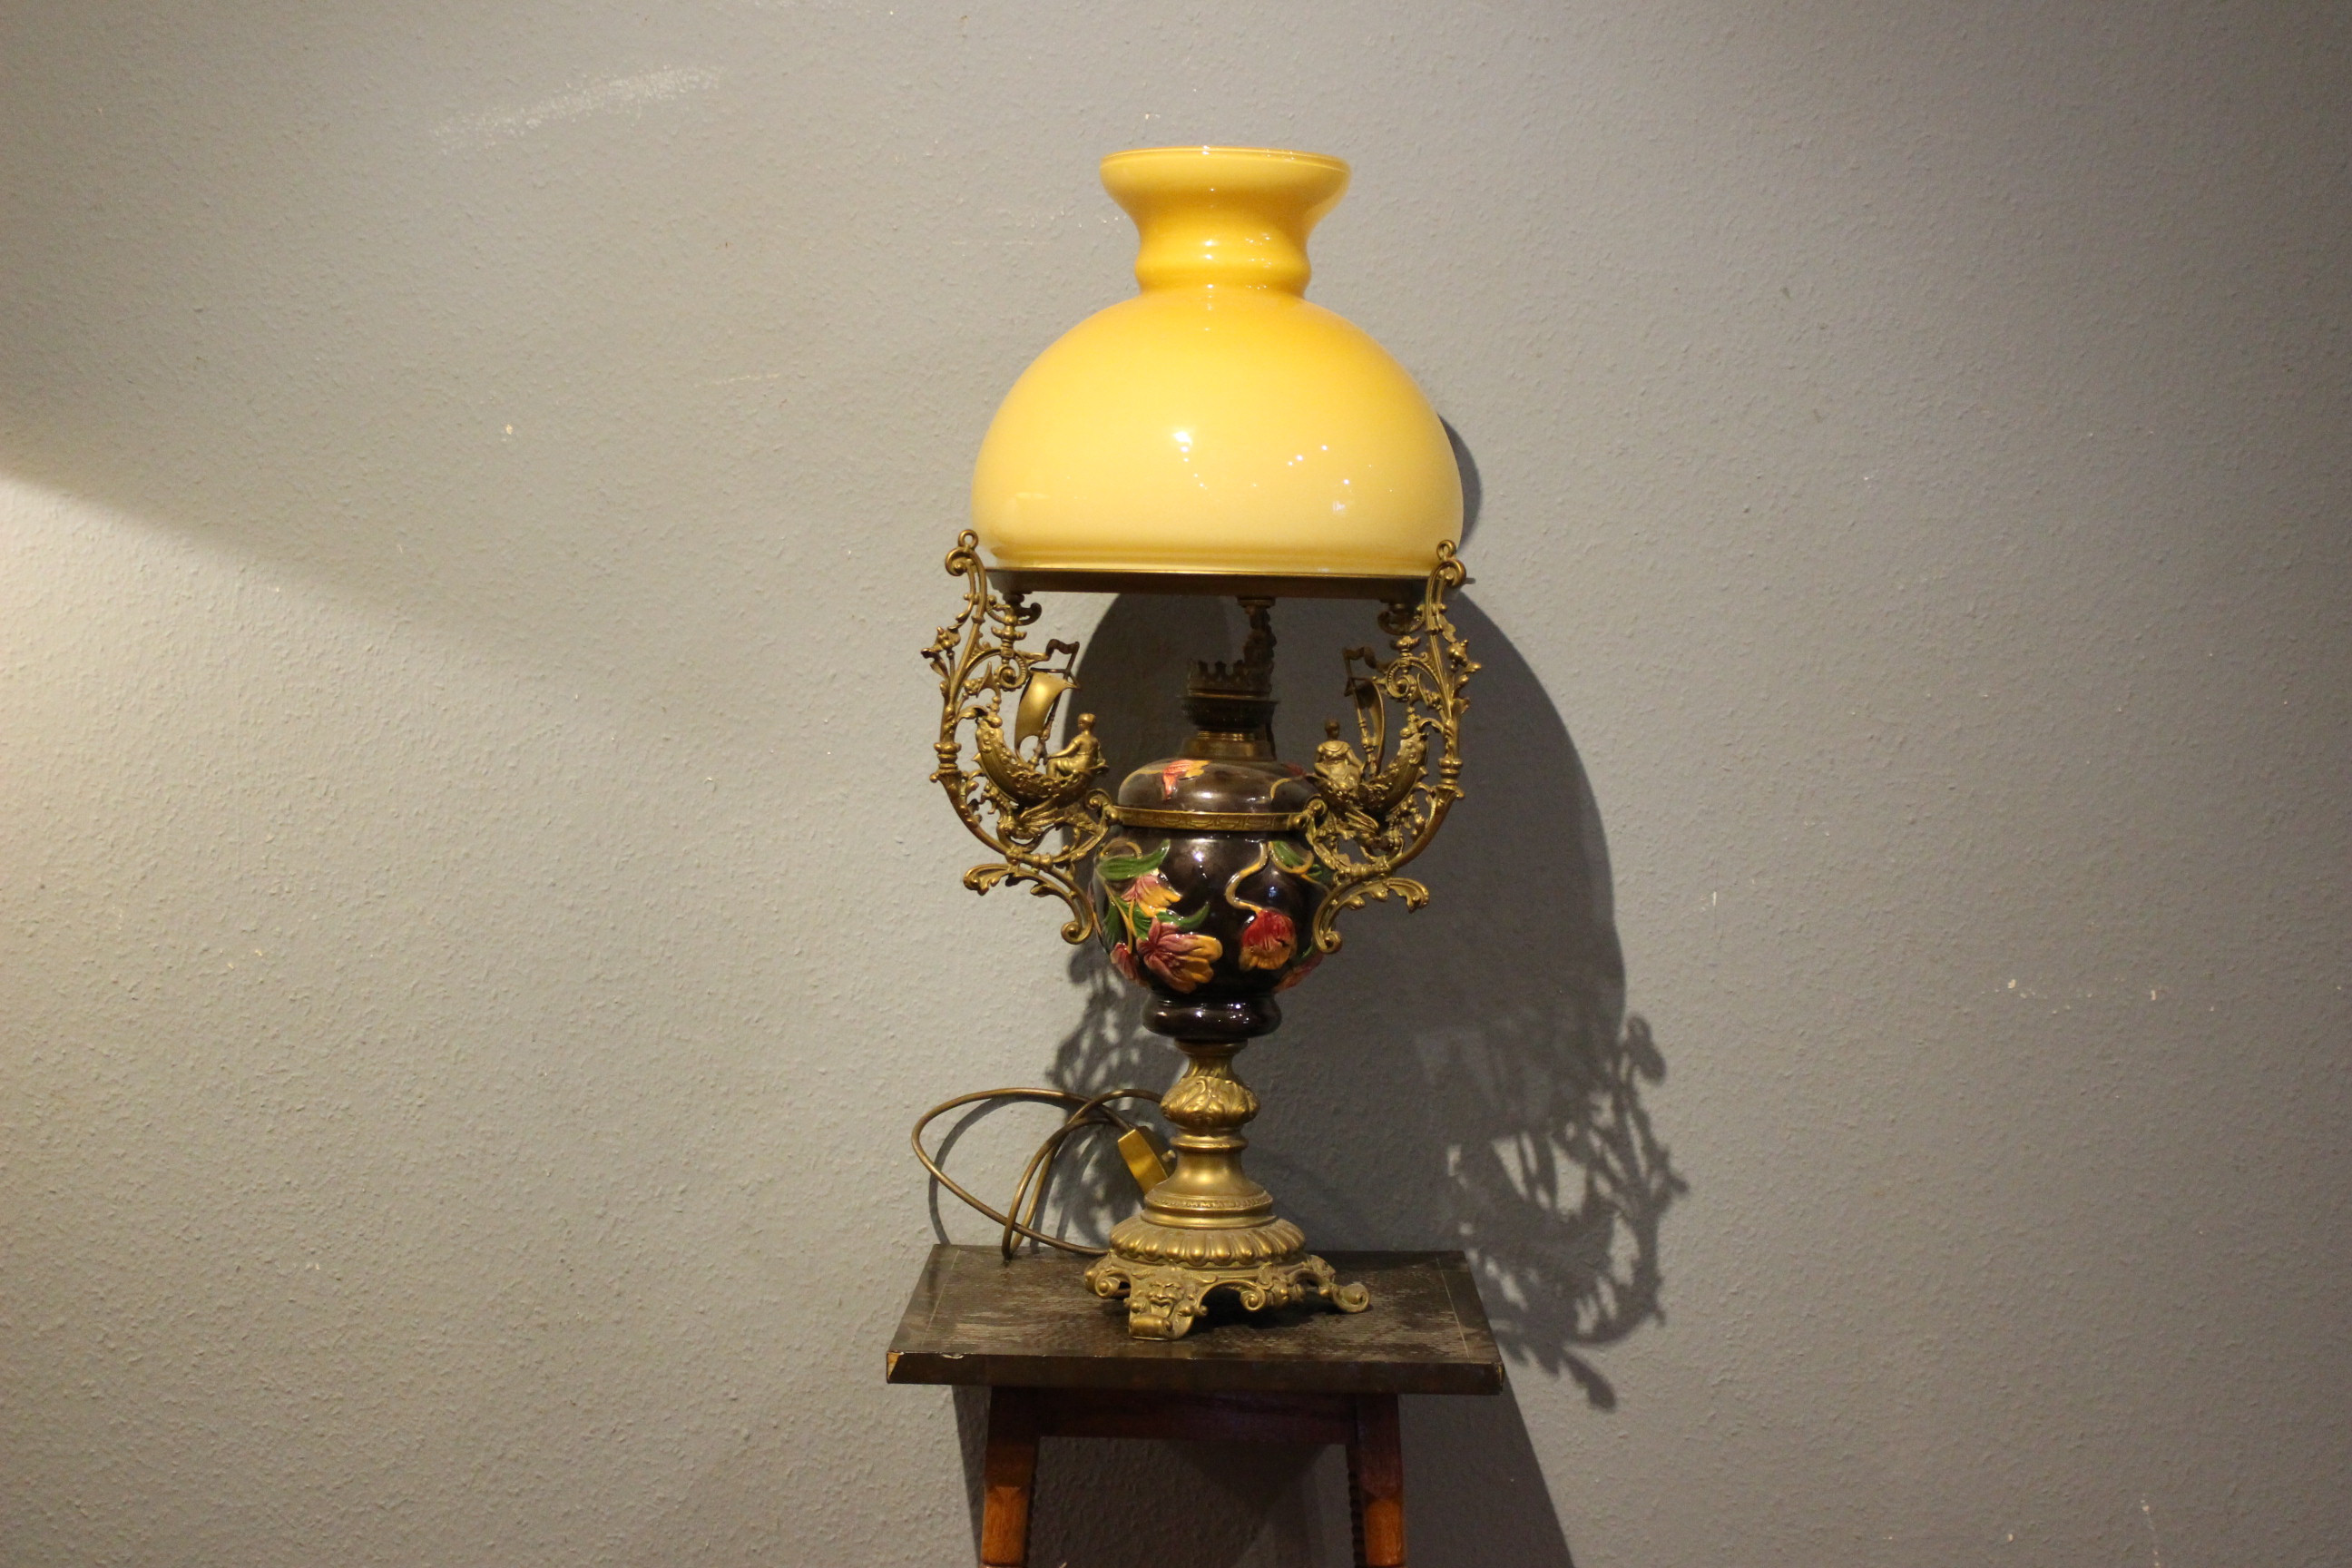 sehr schöne Jugendstil Lampe und Hängeleuchter, Majolica Keramik (Art.-Nr.: 04289)